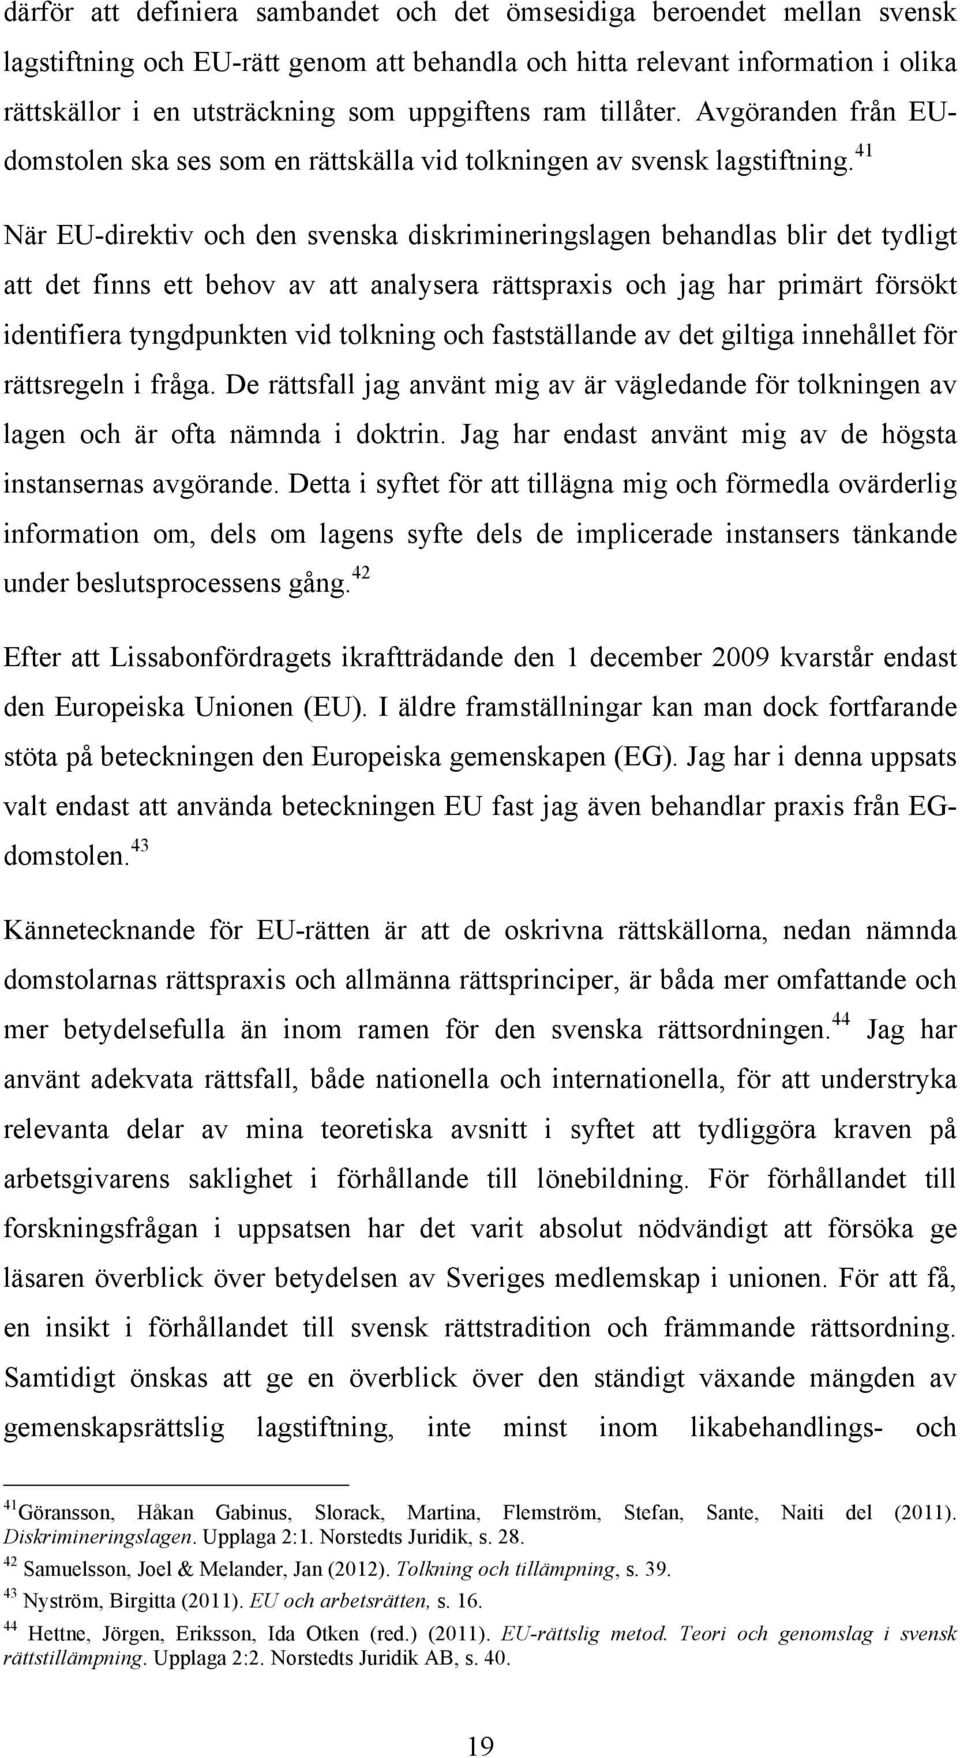 41 När EU-direktiv och den svenska diskrimineringslagen behandlas blir det tydligt att det finns ett behov av att analysera rättspraxis och jag har primärt försökt identifiera tyngdpunkten vid